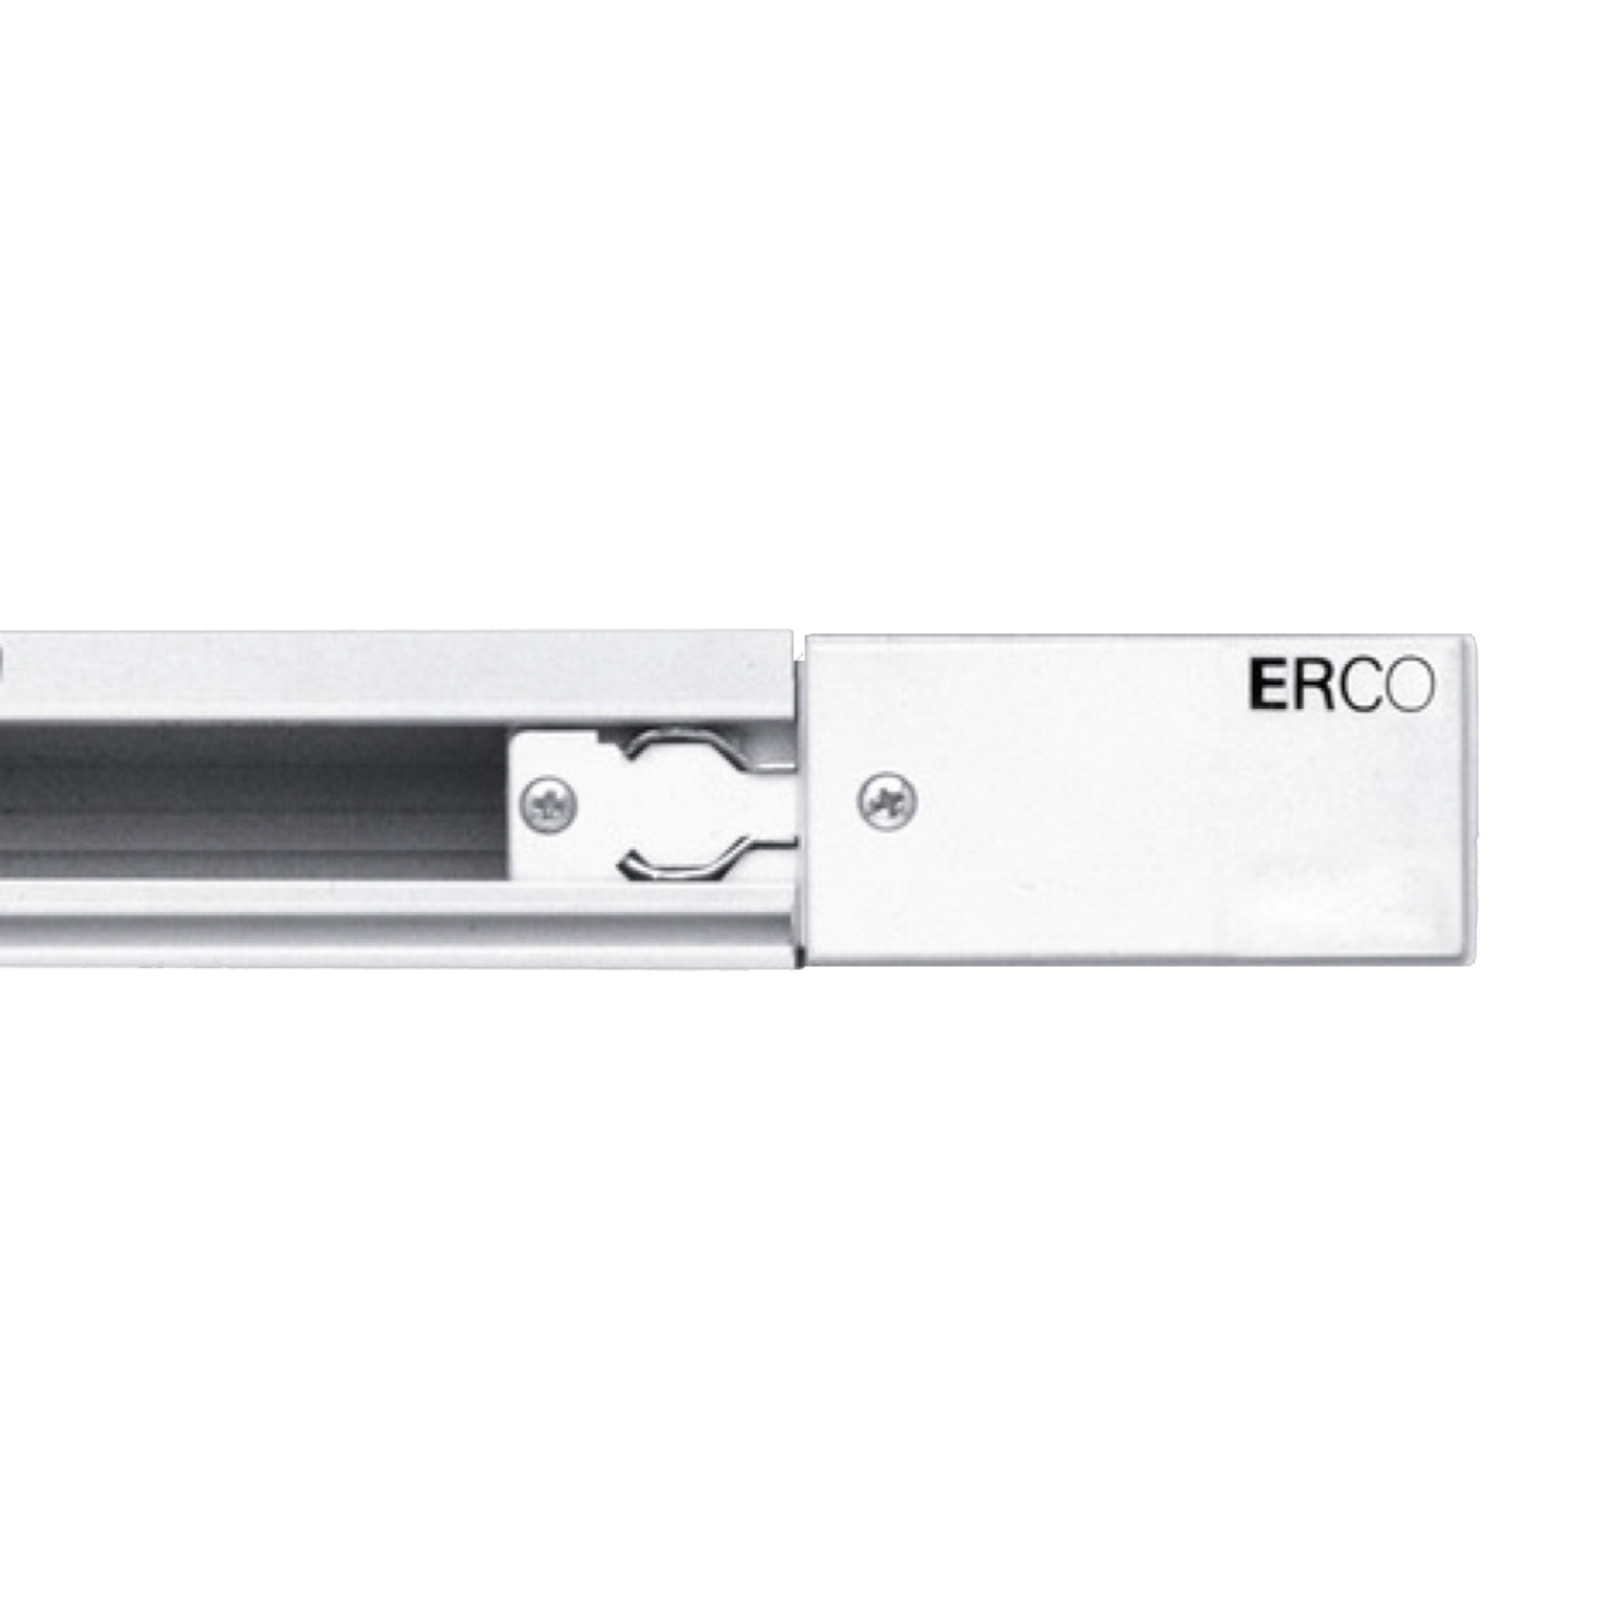 ERCO 3-Phasen-Einspeisung Schutzleiter links weiß